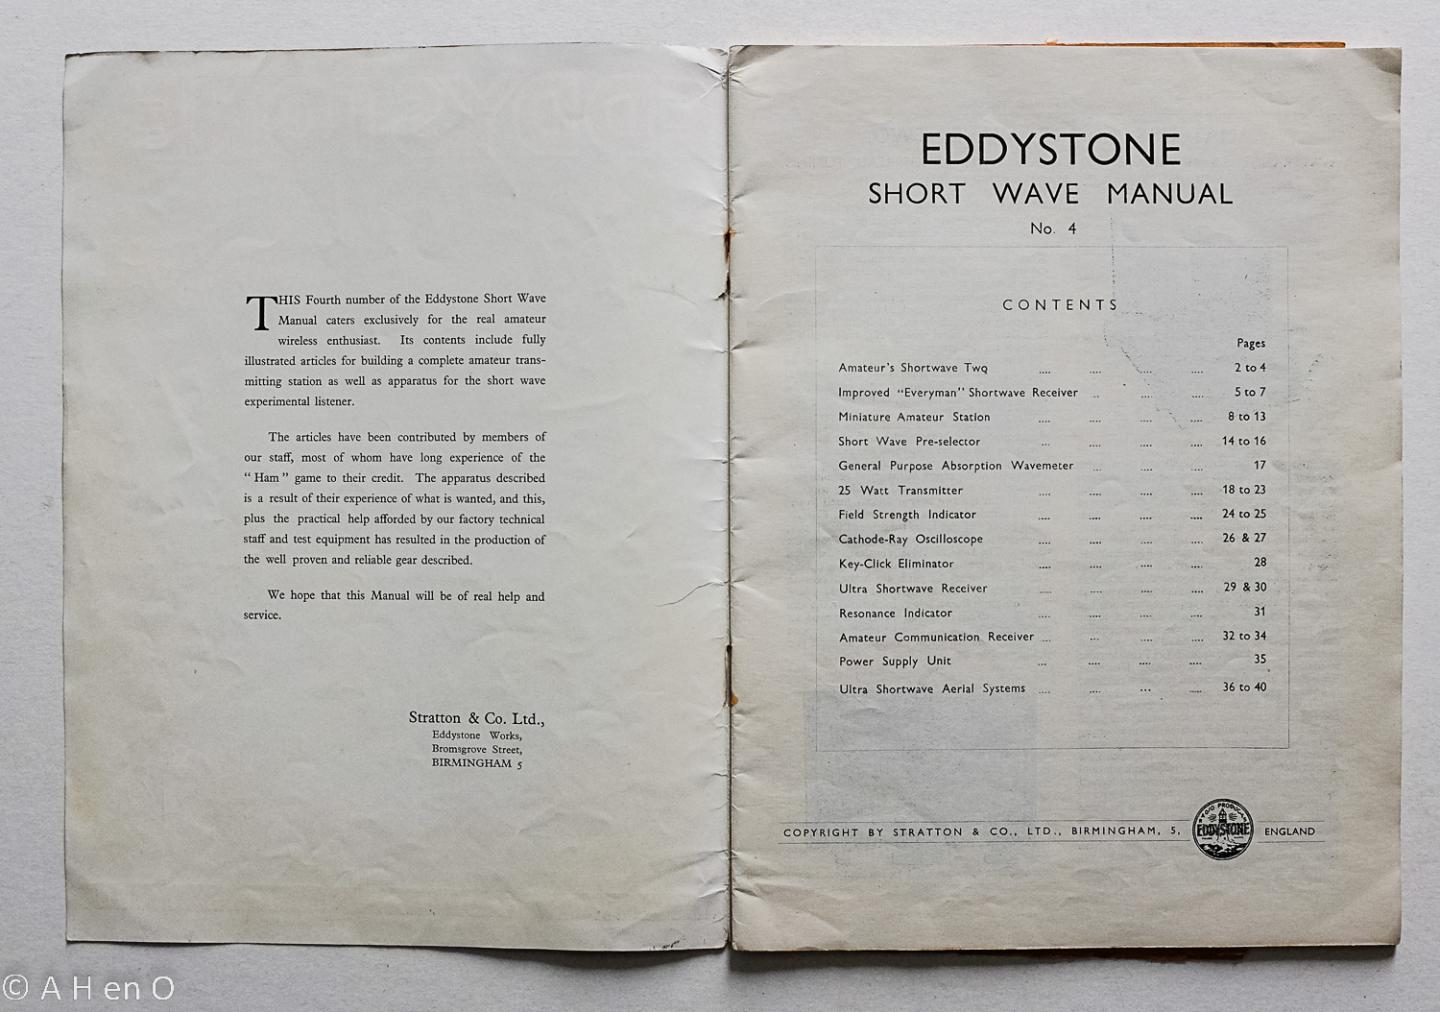  - Eddystone Short Wave Manual - No. 4